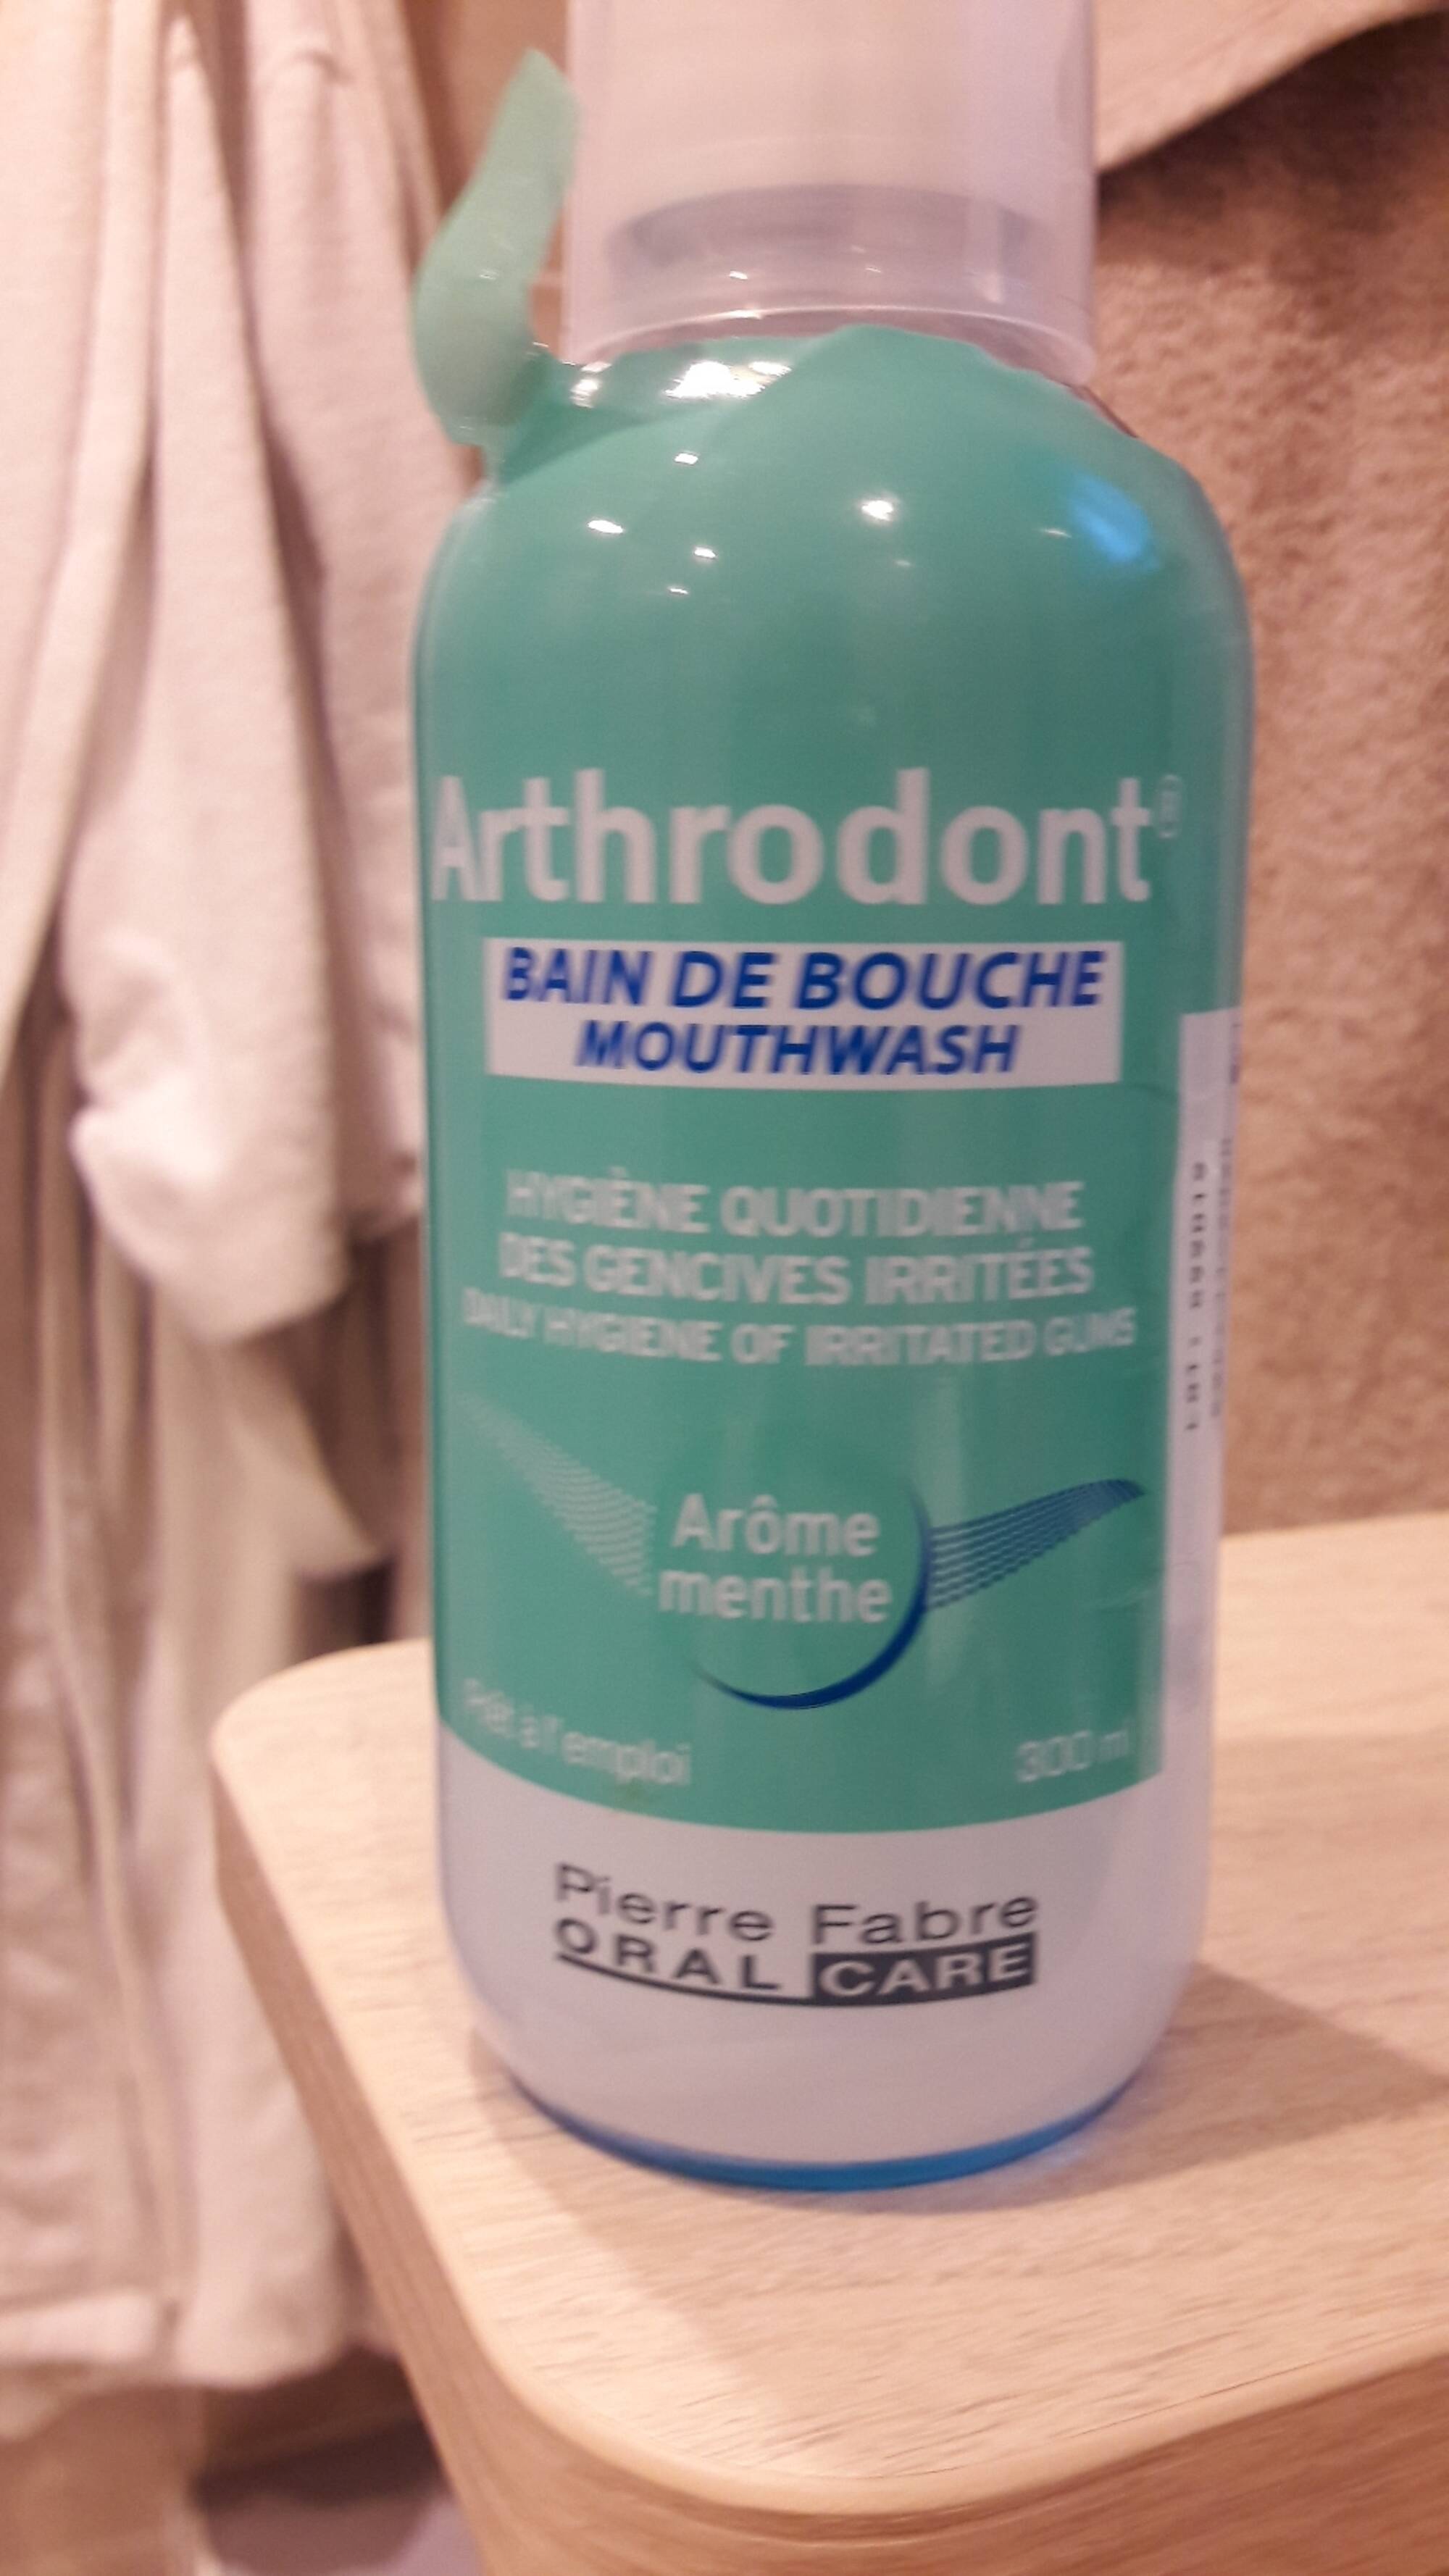 ARTHRODONT - Bain de bouche arôme menthe